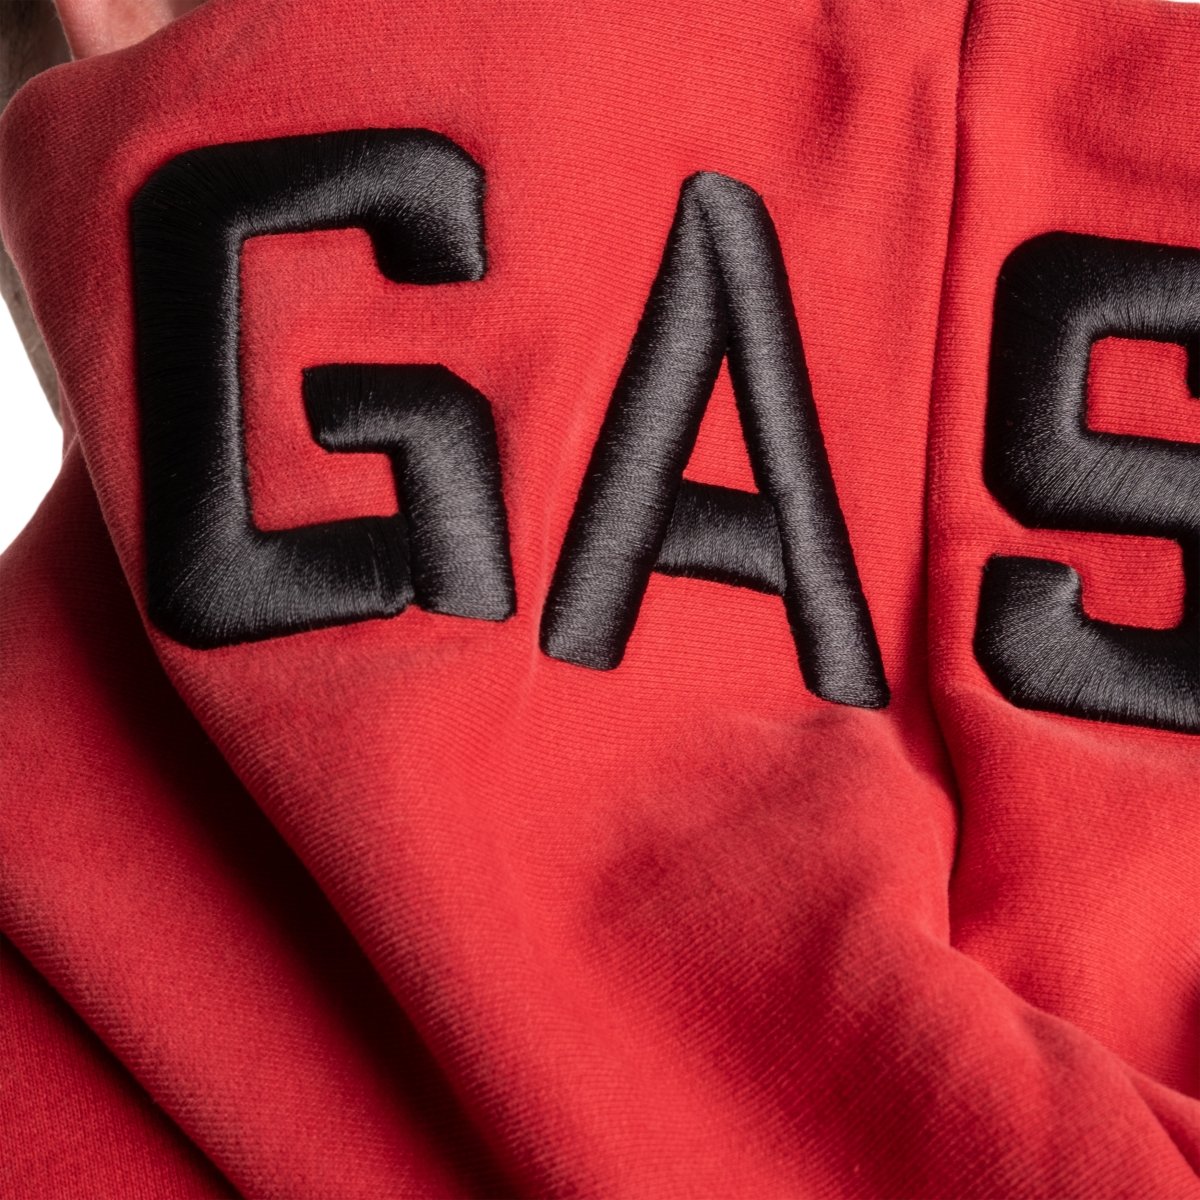 GASP Pro GASP Hood - Chilli Red - Urban Gym Wear